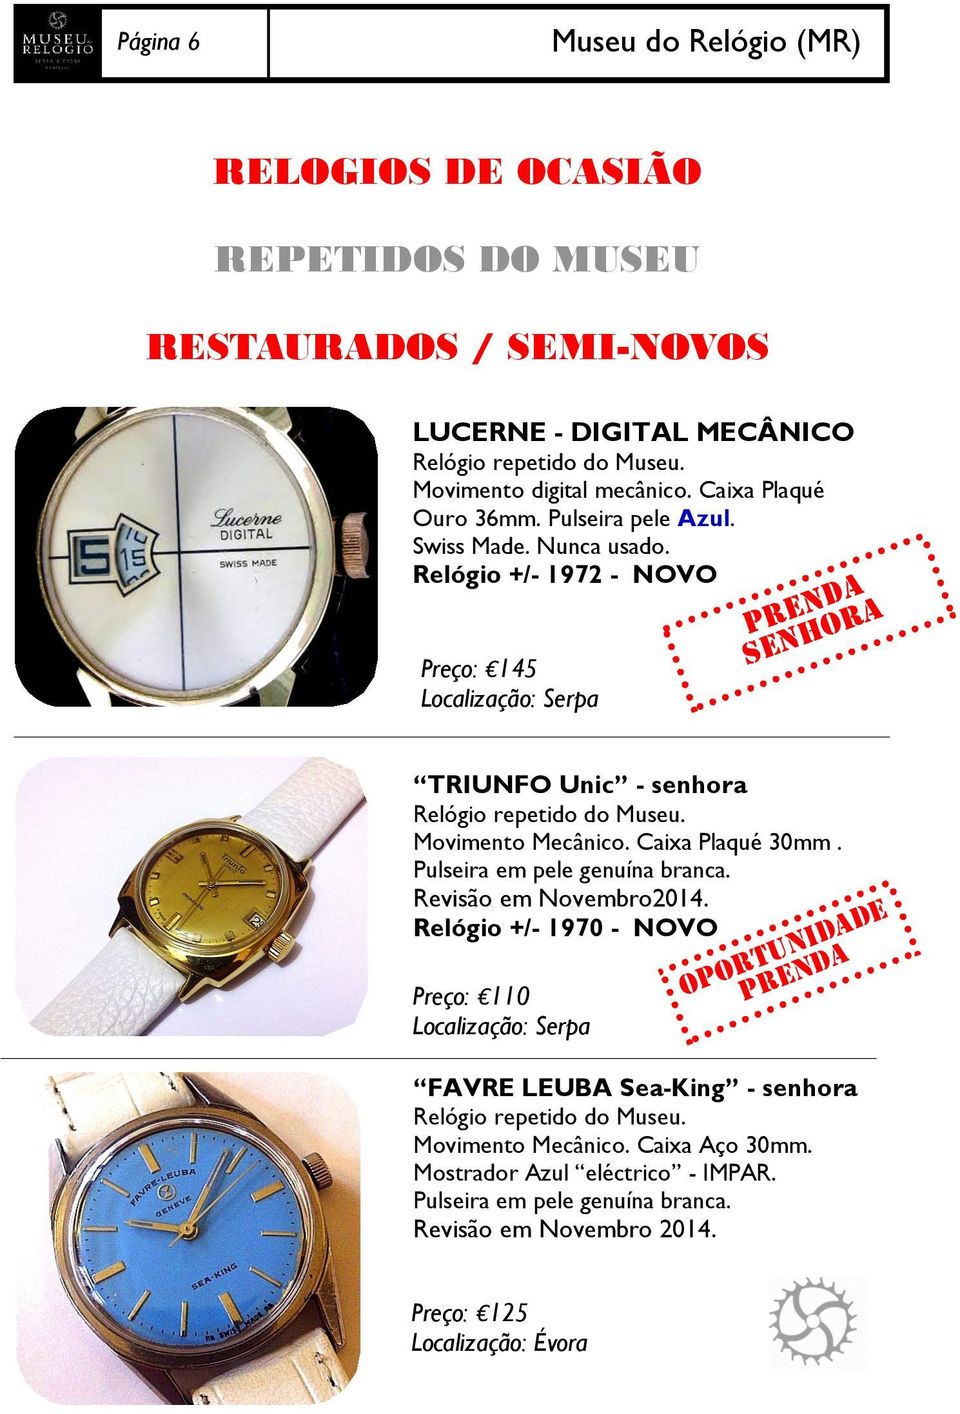 Relógio +/- 1972 - NOVO Preço: 145 PRENDA SENHORA TRIUNFO Unic - senhora Relógio repetido do Museu. Movimento Mecânico. Caixa Plaqué 30mm. Pulseira em pele genuína branca.